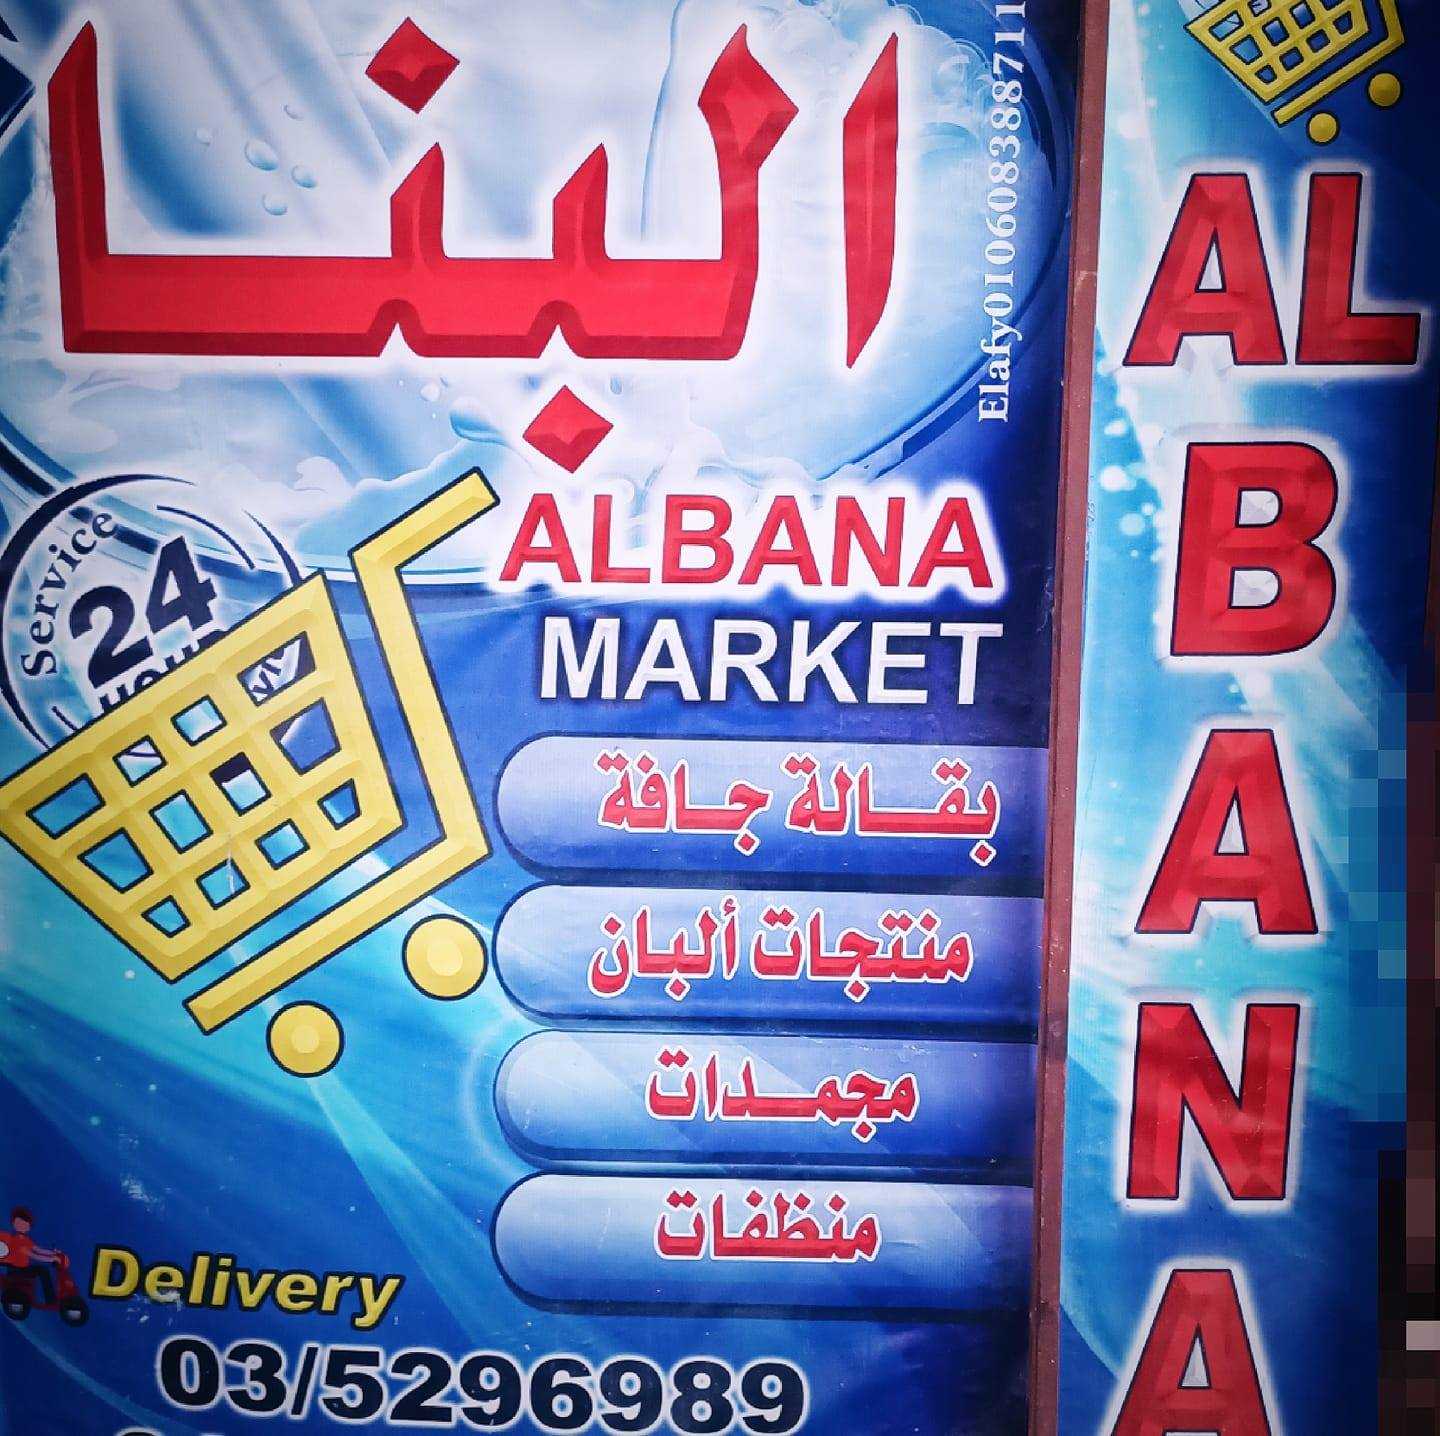 Al Bana Market